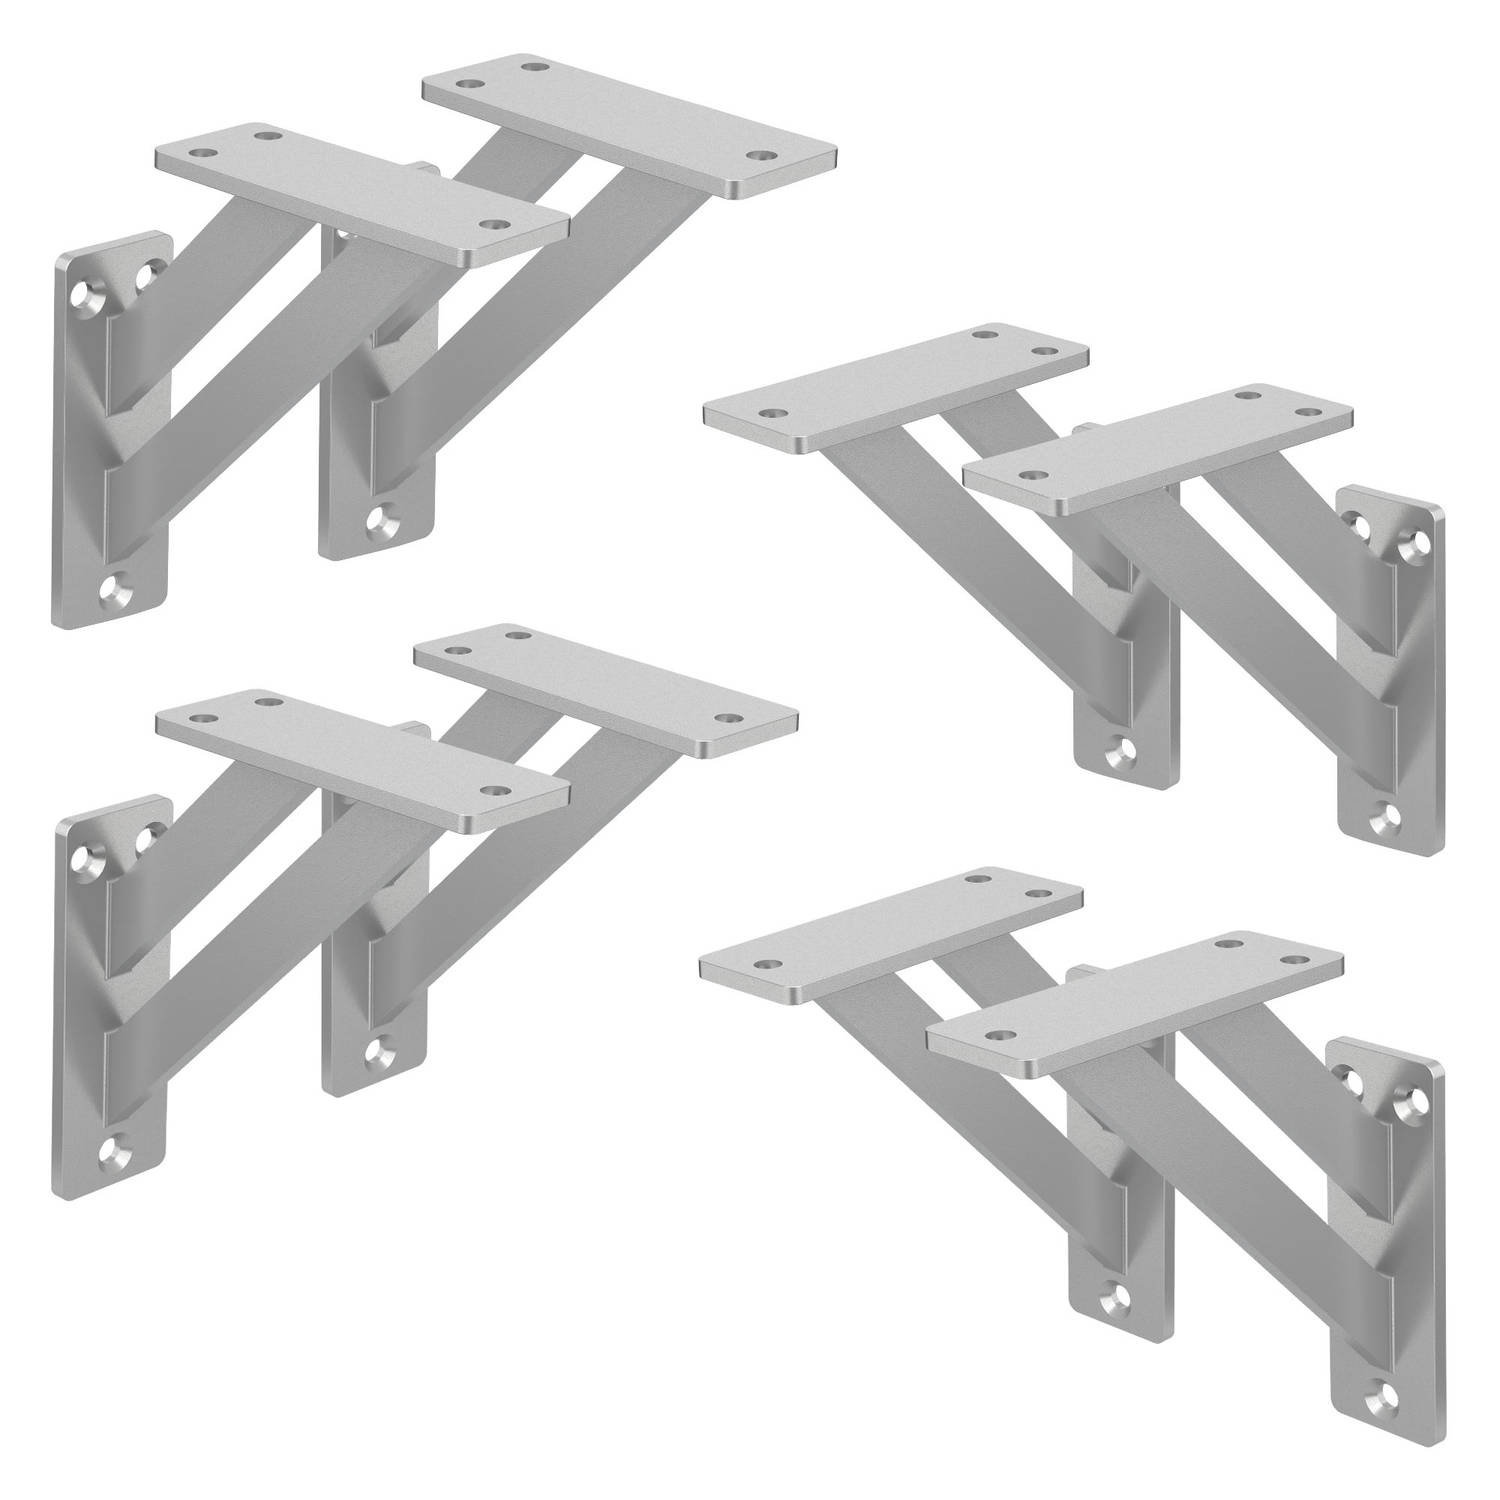 ML-Design 8 stuks plankdrager 120x120 mm, zilver, aluminium, zwevende plankdrager, plankdrager, wanddrager voor plankdrager, plankdrager voor wandmontage, wandplankdrager plankdrag